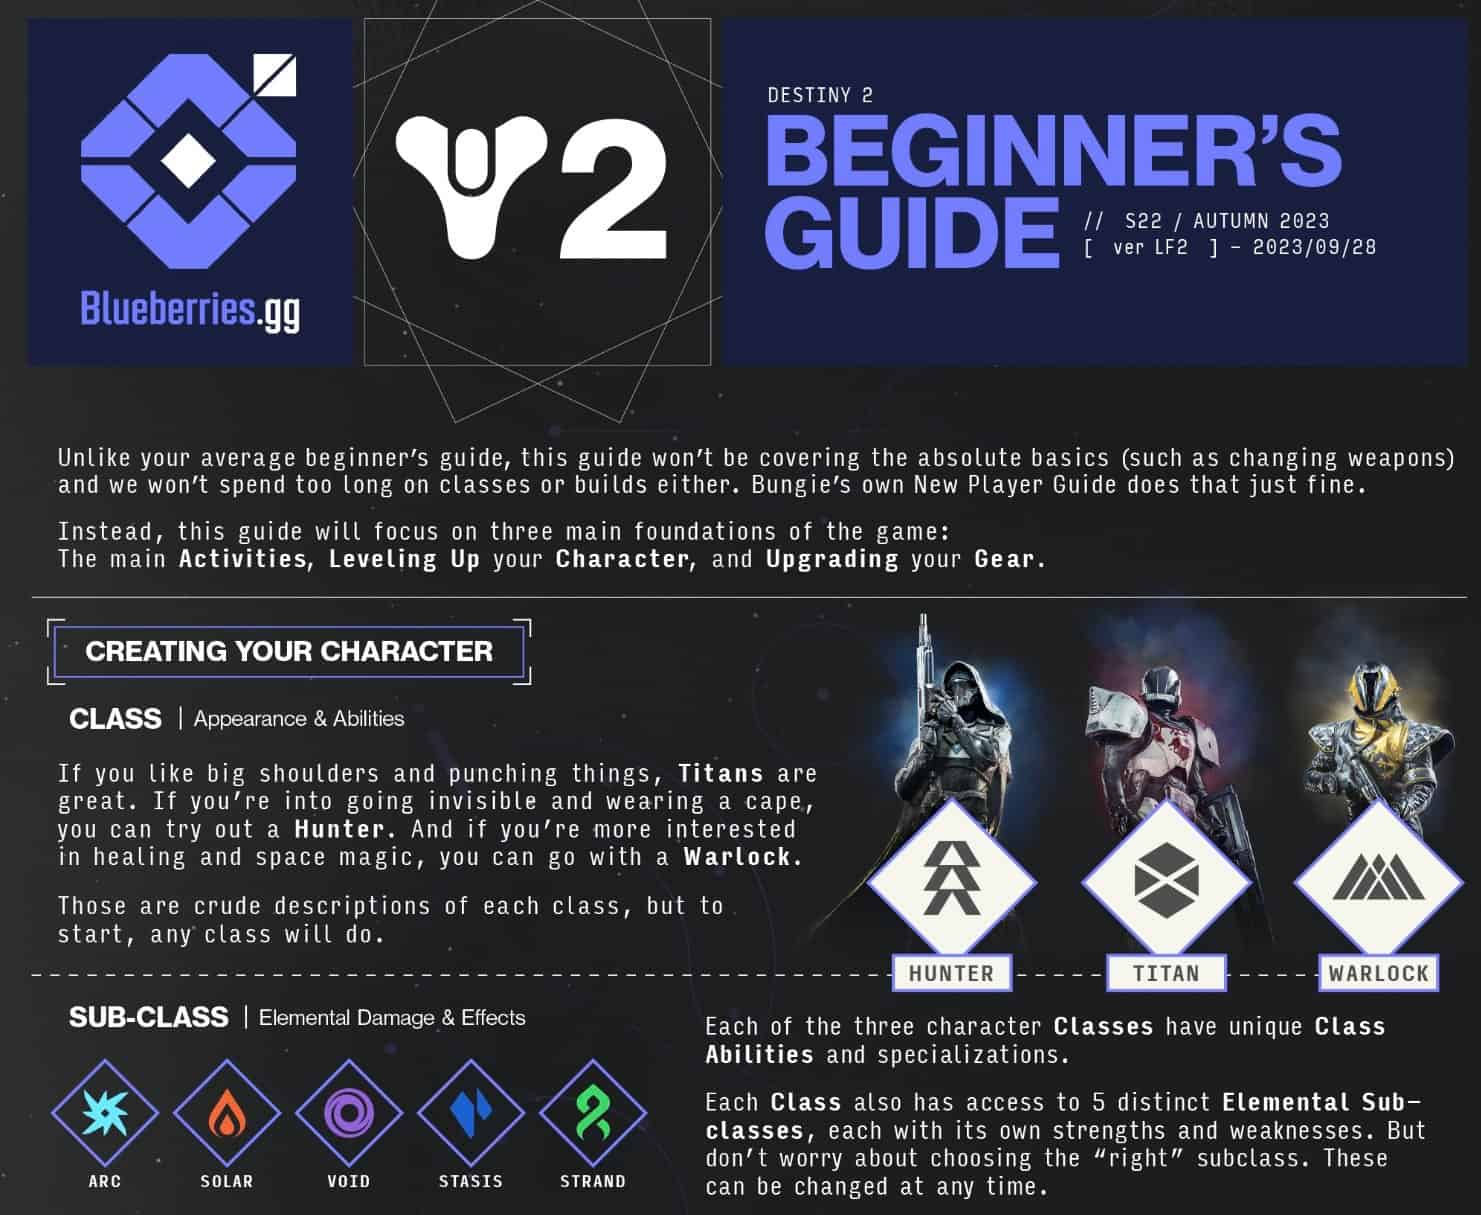 Destiny 2 Beginner's Guide - Starting Destiny 2 in 2023 - Green